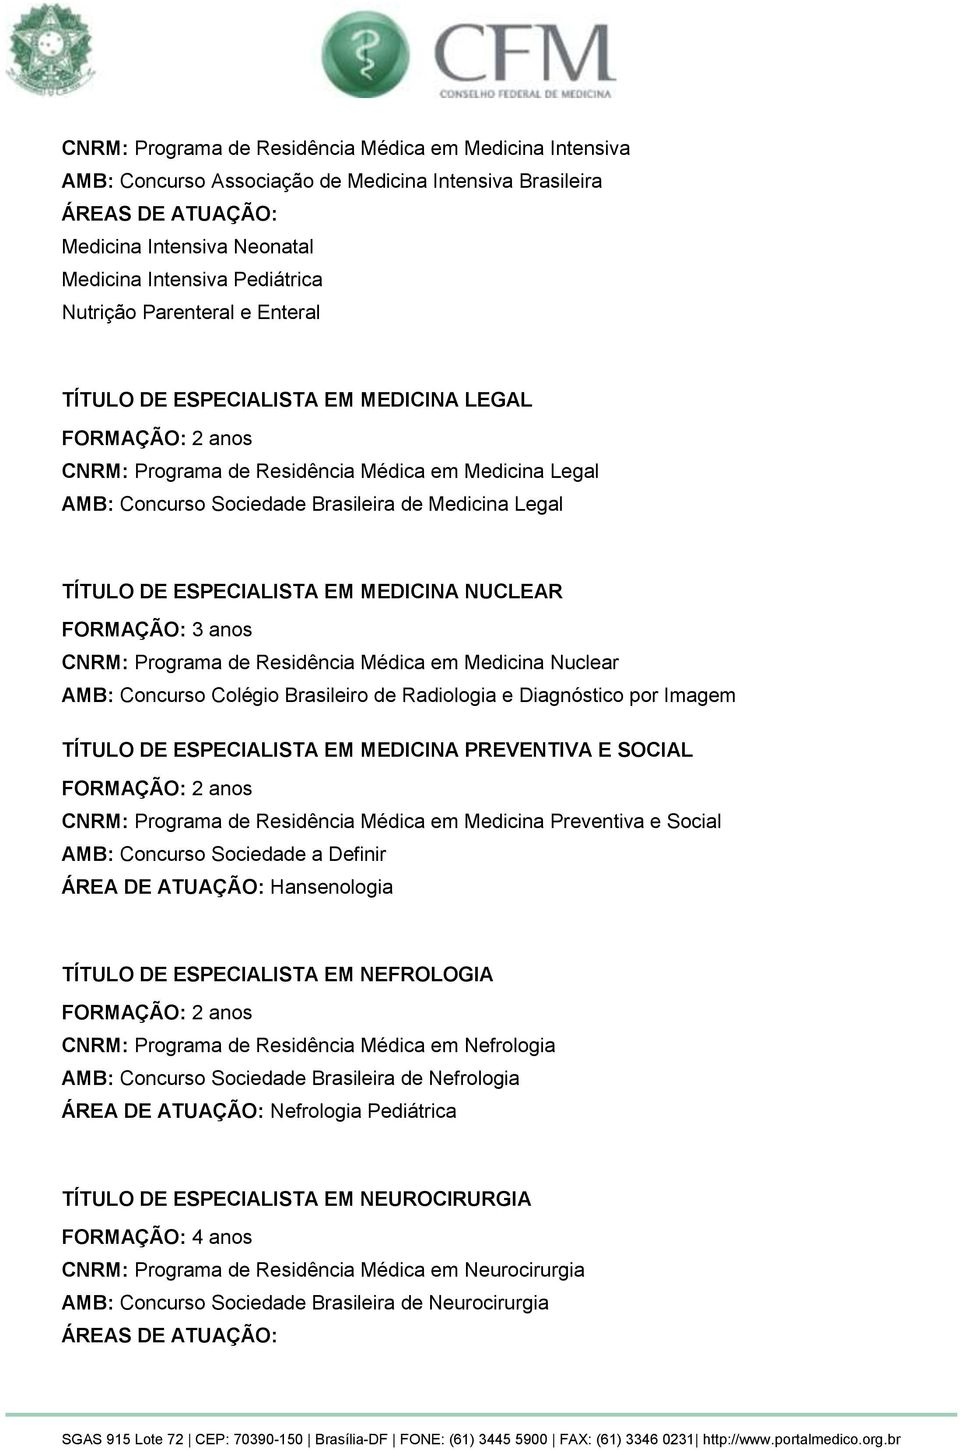 FORMAÇÃO: 3 anos CNRM: Programa de Residência Médica em Medicina Nuclear AMB: Concurso Colégio Brasileiro de Radiologia e Diagnóstico por Imagem TÍTULO DE ESPECIALISTA EM MEDICINA PREVENTIVA E SOCIAL